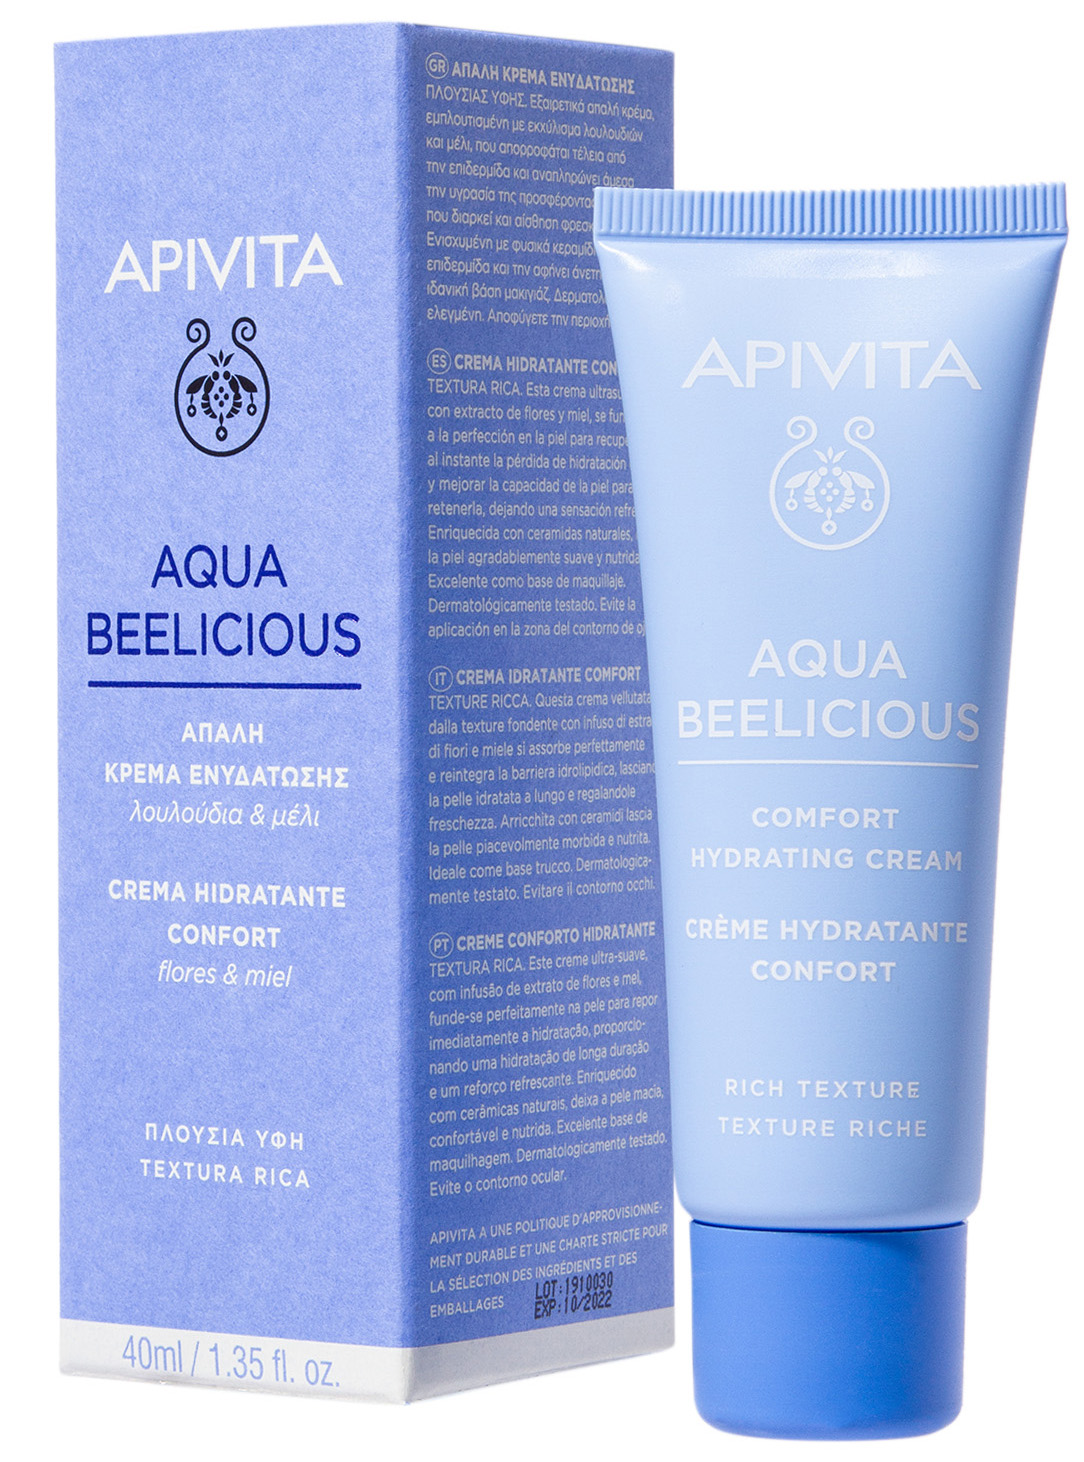 Aqua Beelicious крем-комфорт насыщенной текстурой 40мл Апивита Аква Билишес